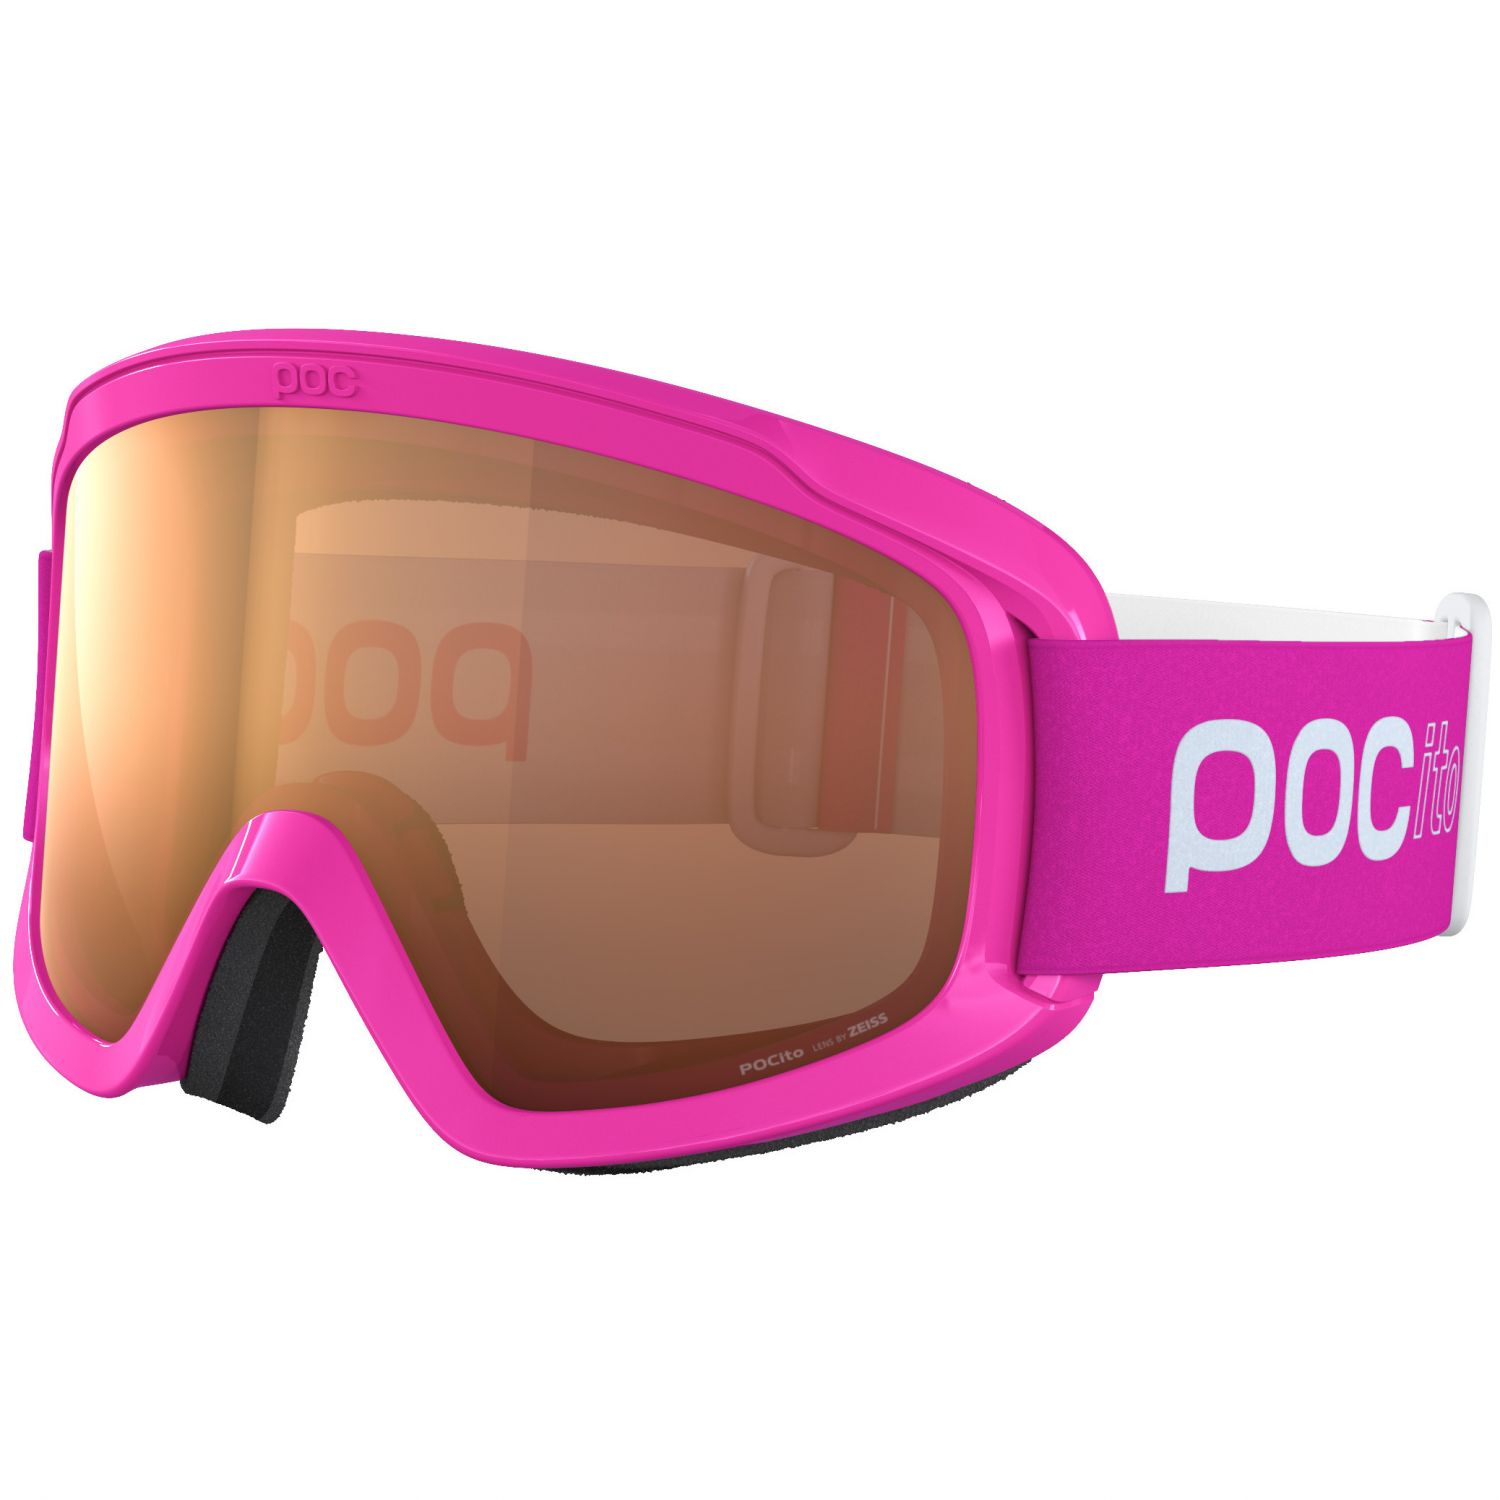 Billede af POCito Opsin, pink hos Skisport.dk